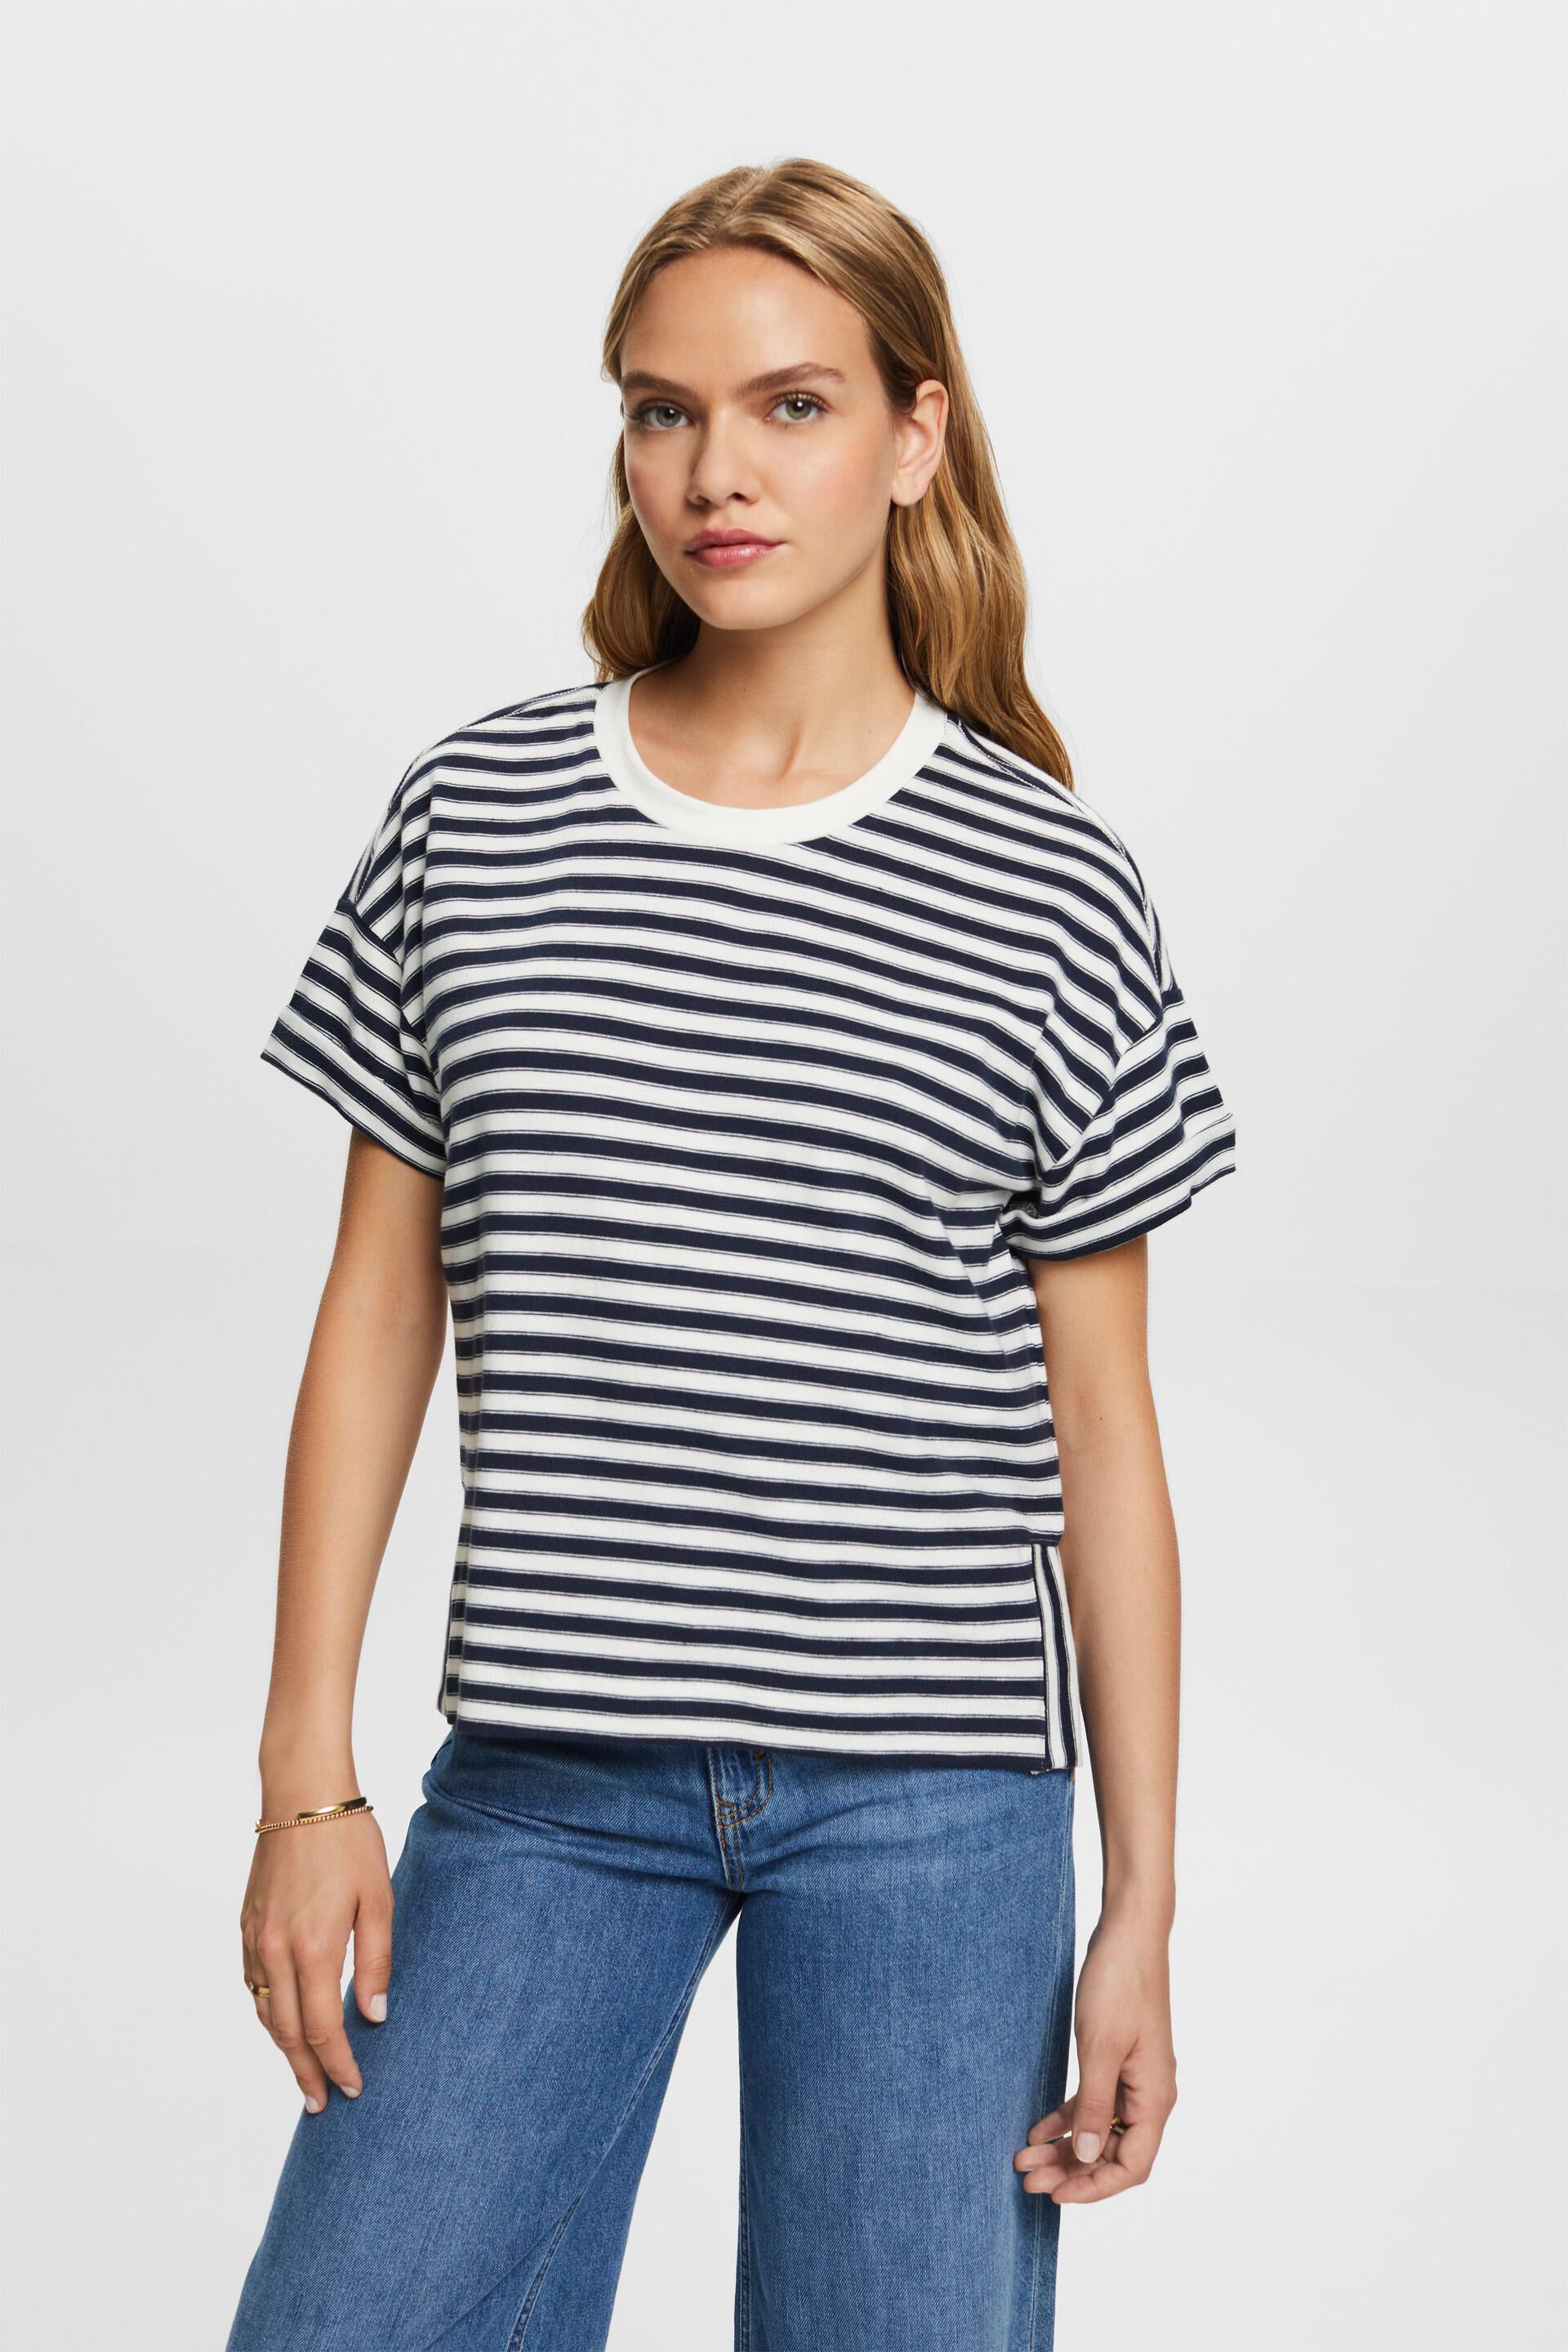 Esprit 100% Striped t-shirt, cotton